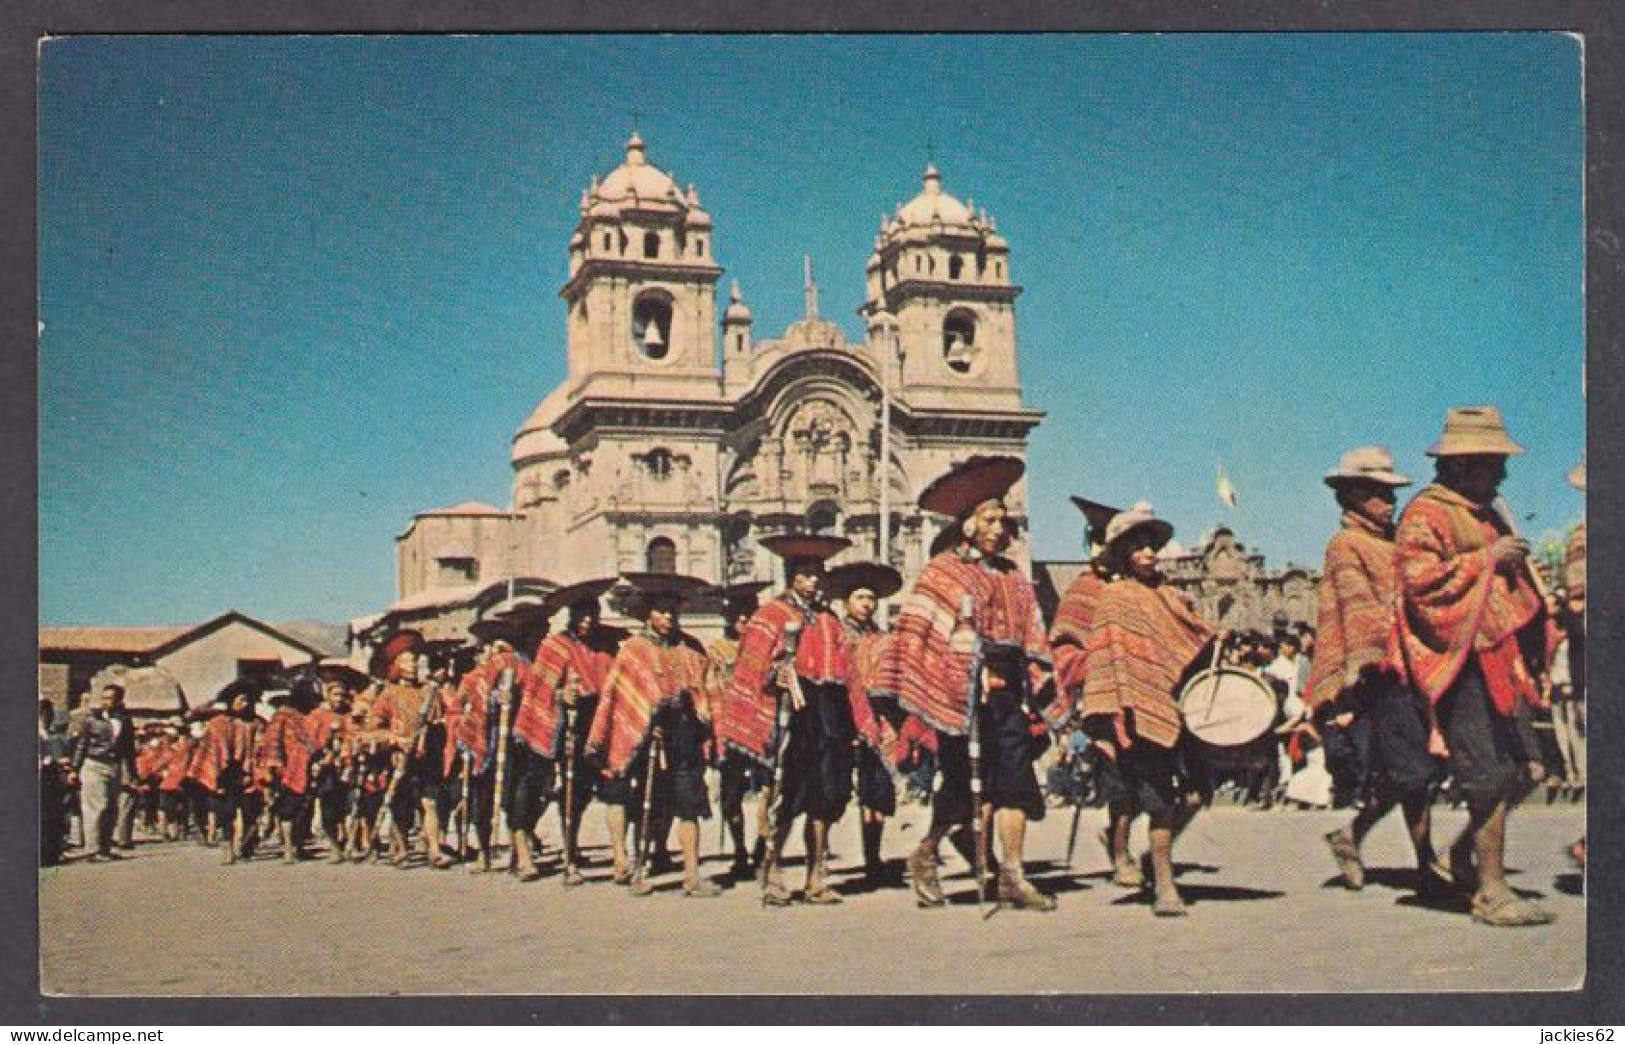 127708/ CUZCO, Parade Of Indian Chiefs - Peru